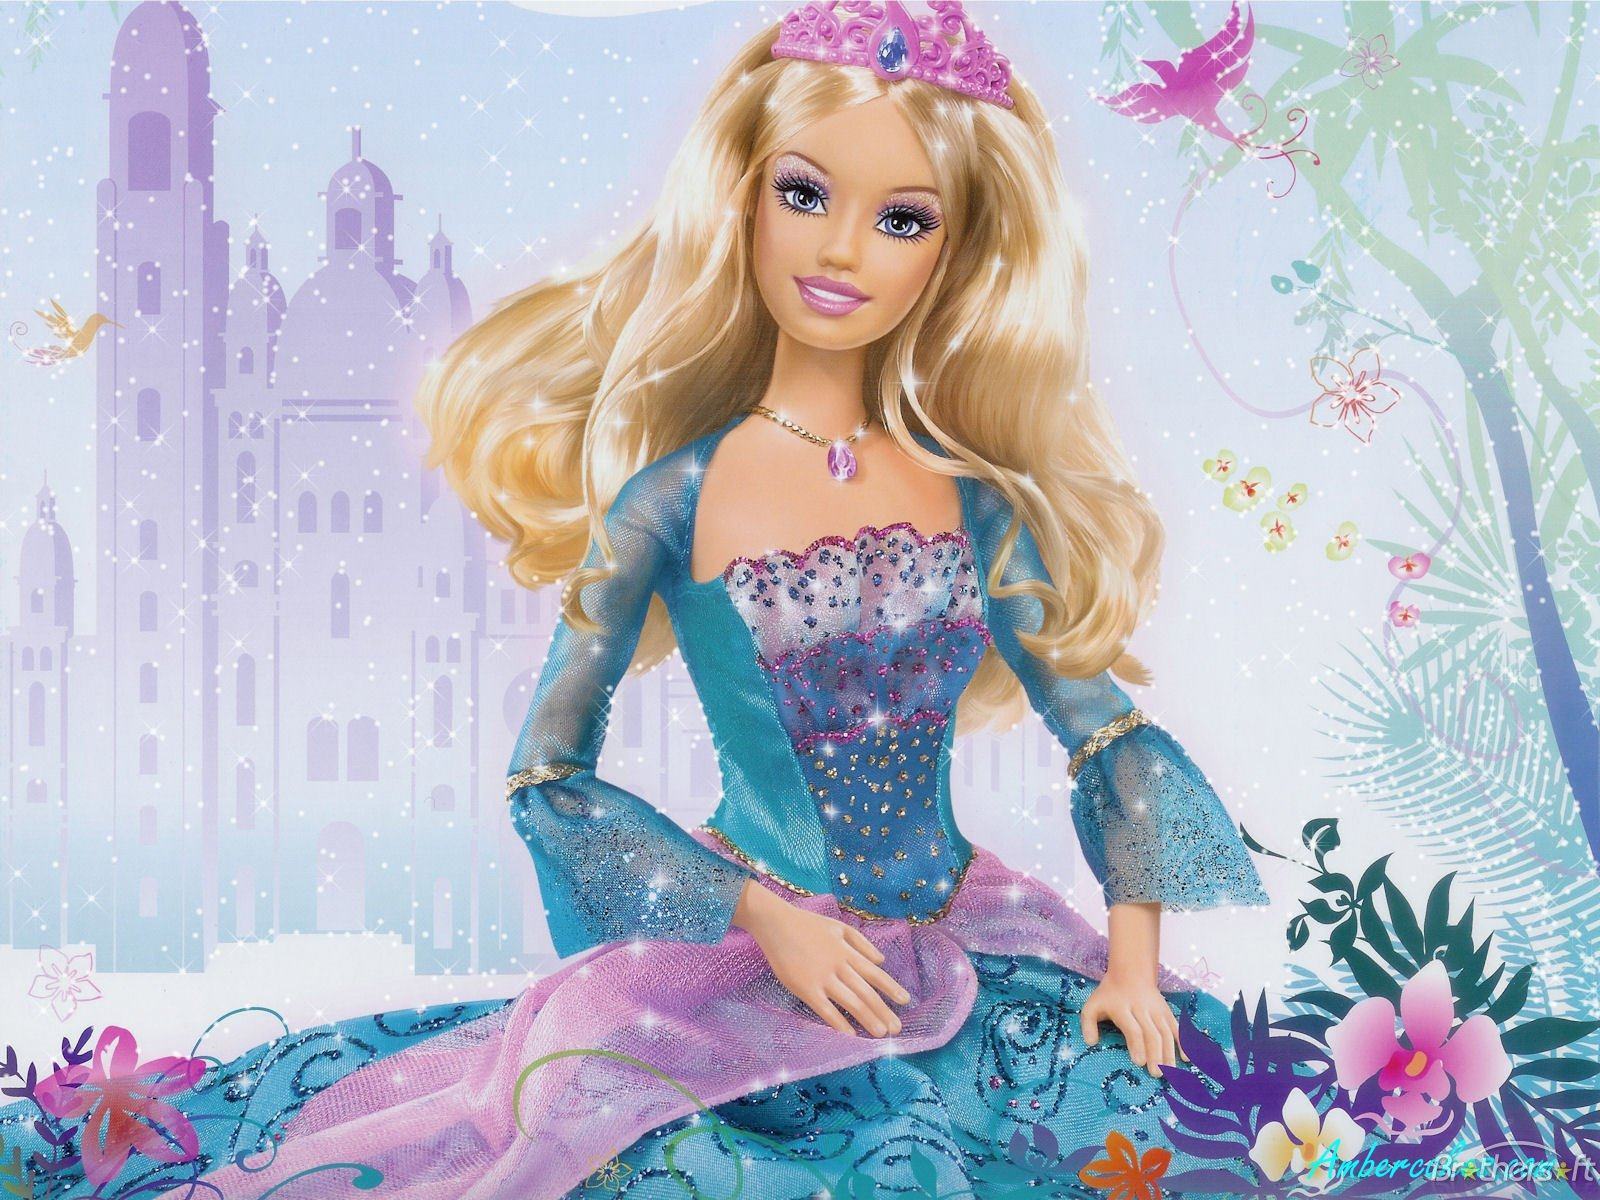 Búp bê Barbie trong chiếc váy xanh xinh đẹp